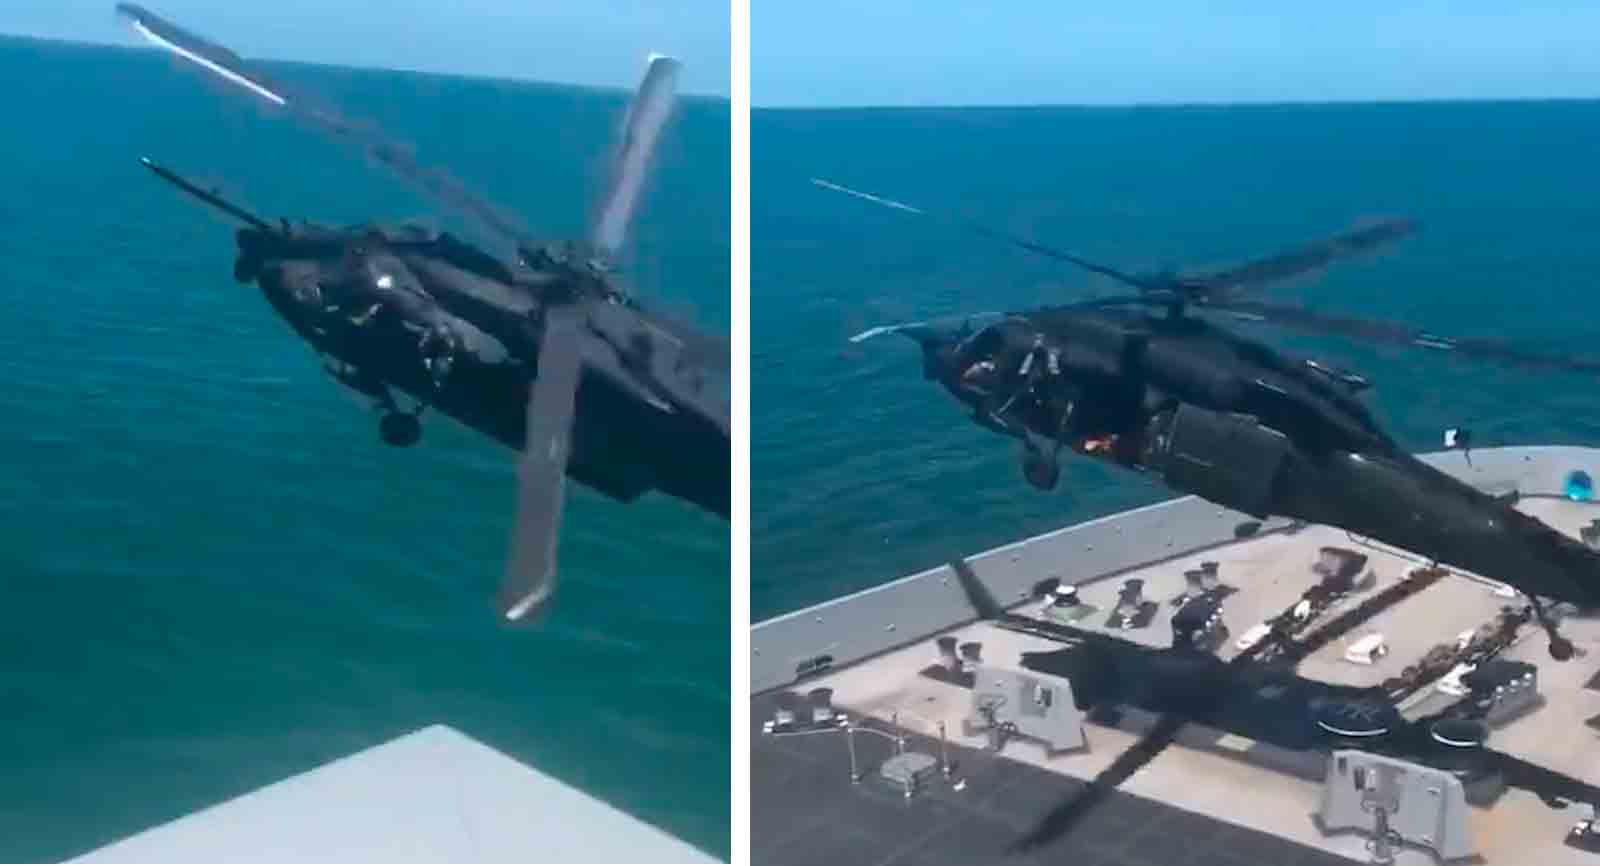 Vidéo incroyable montrant l'interception et l'invasion d'un navire en mouvement par un hélicoptère de l'armée américaine. Photo et vidéo : Reproduction twitter @stallhornlulul